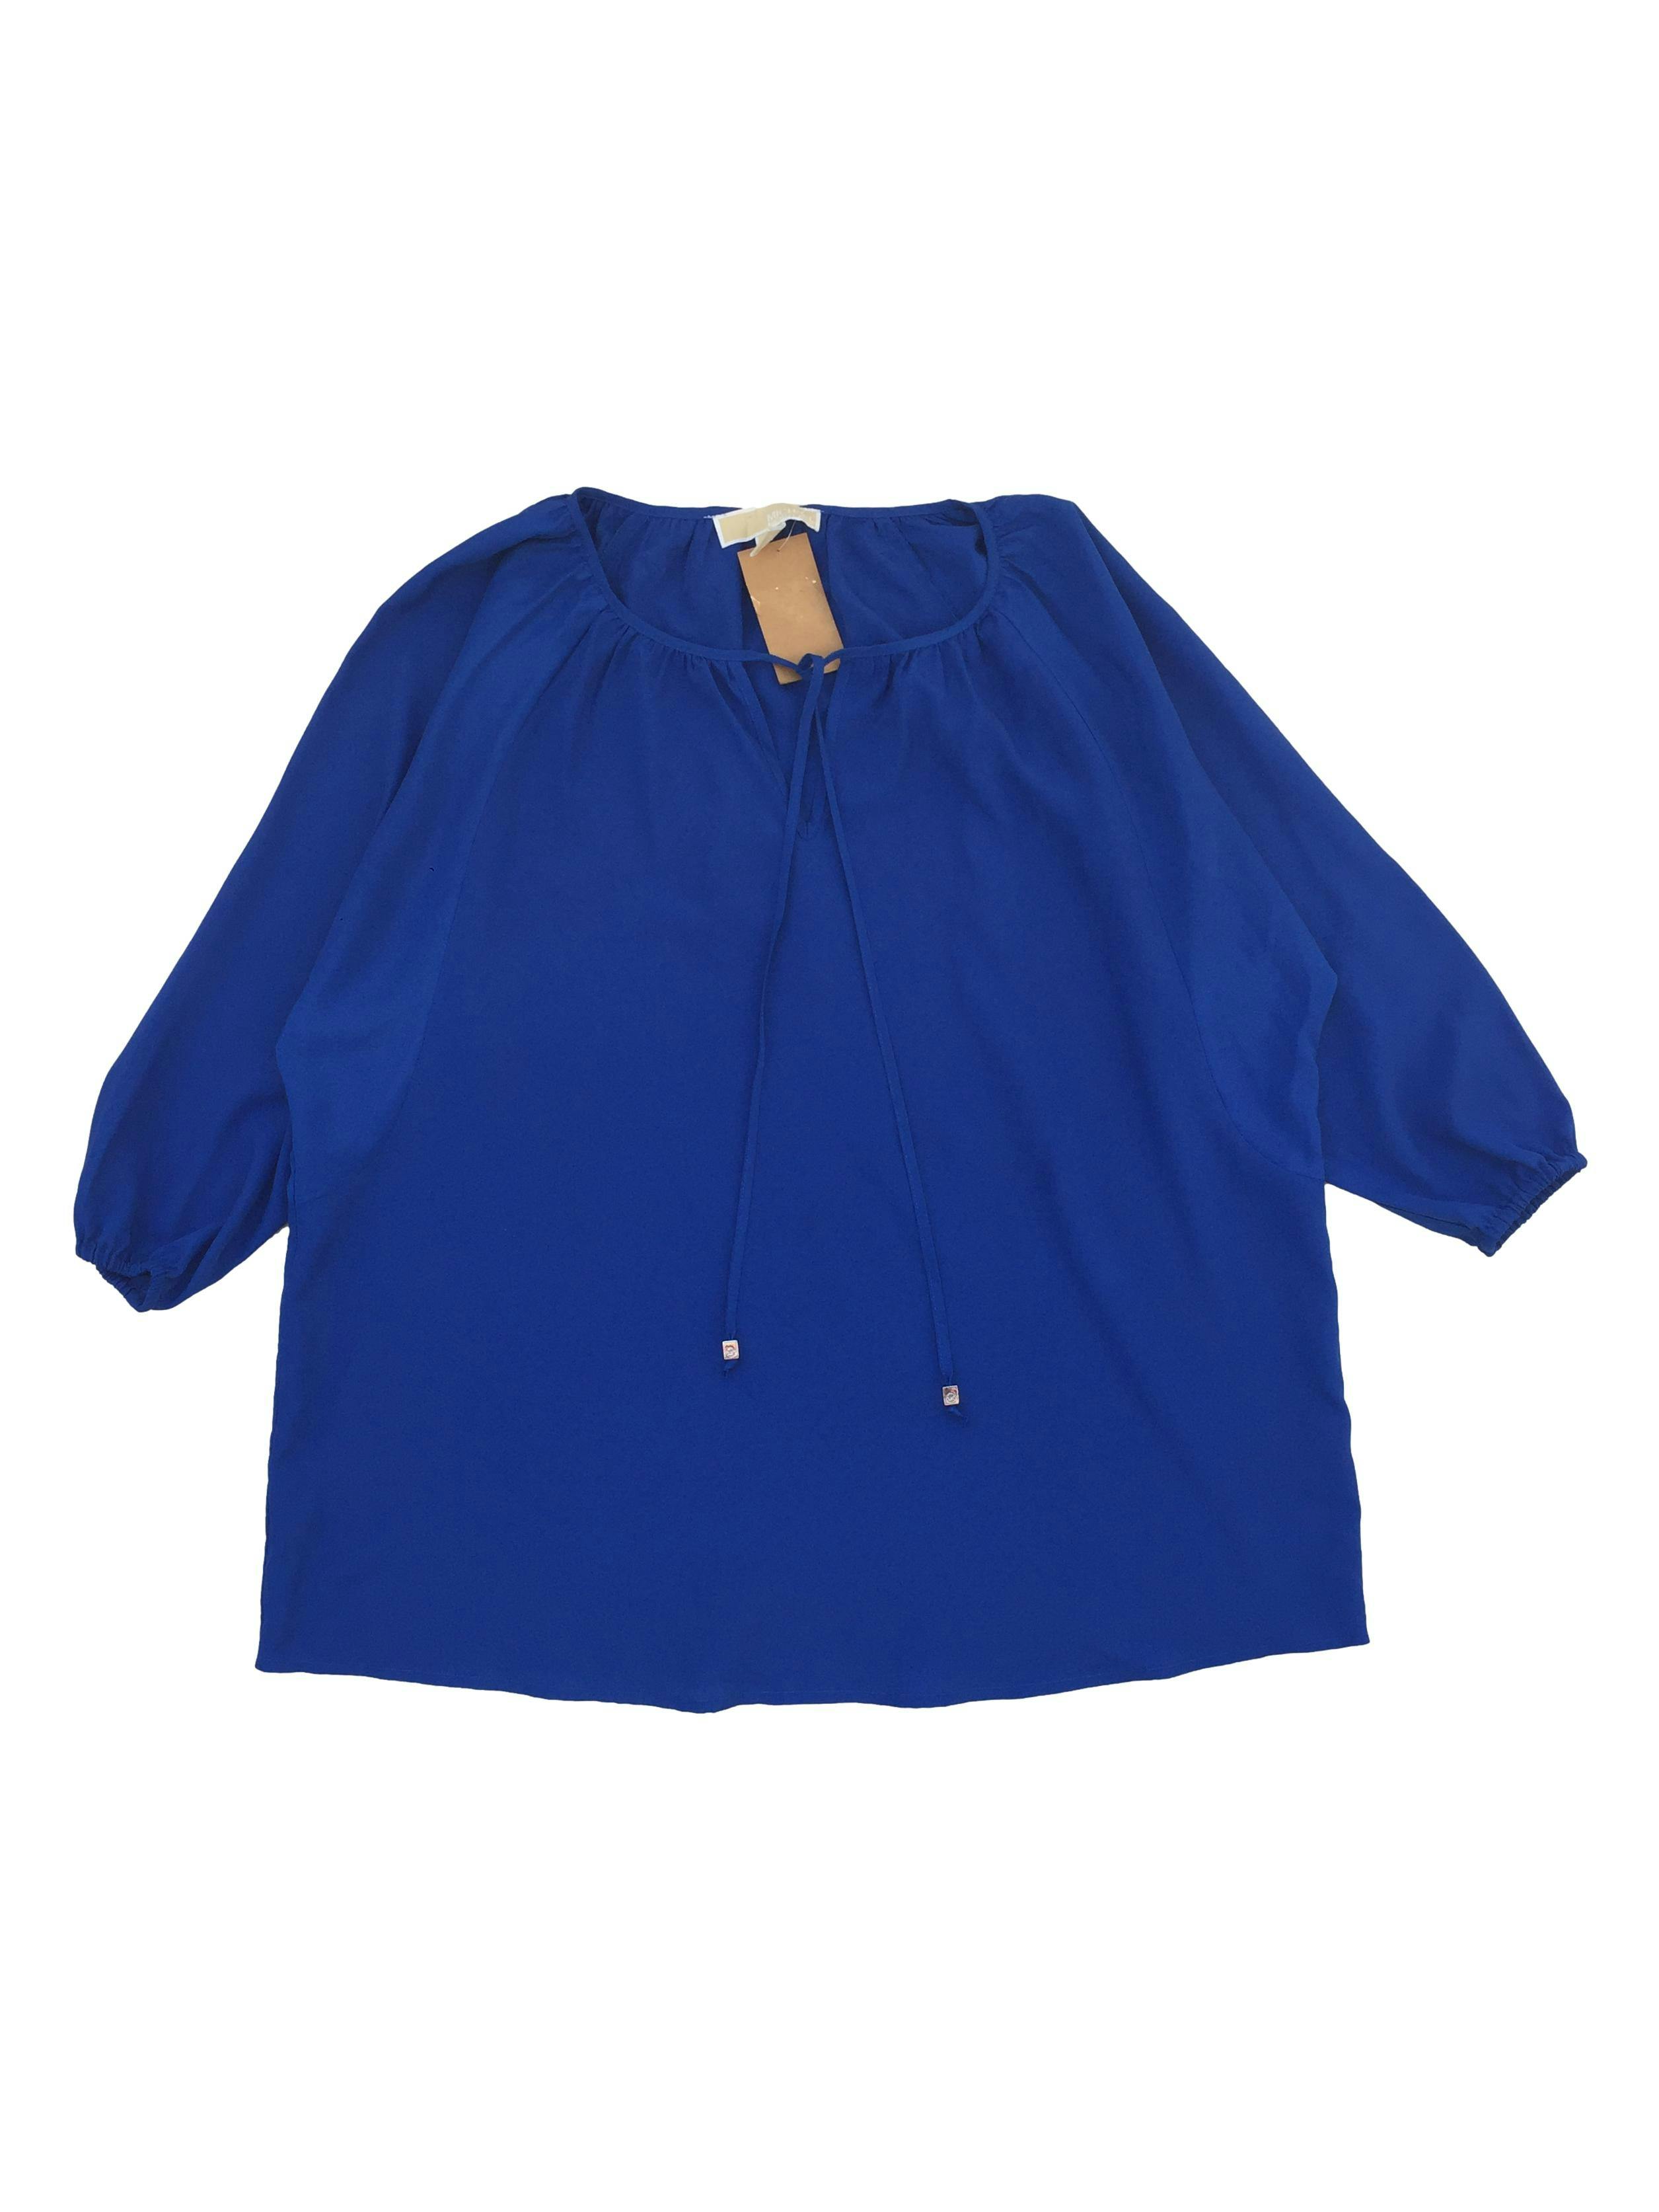 Blusa Oversized Michael Kors de tela fluída azul, pasador en el cuello, manga 3/4 con elástico. Ancho: 60cm, Largo: 68cm.